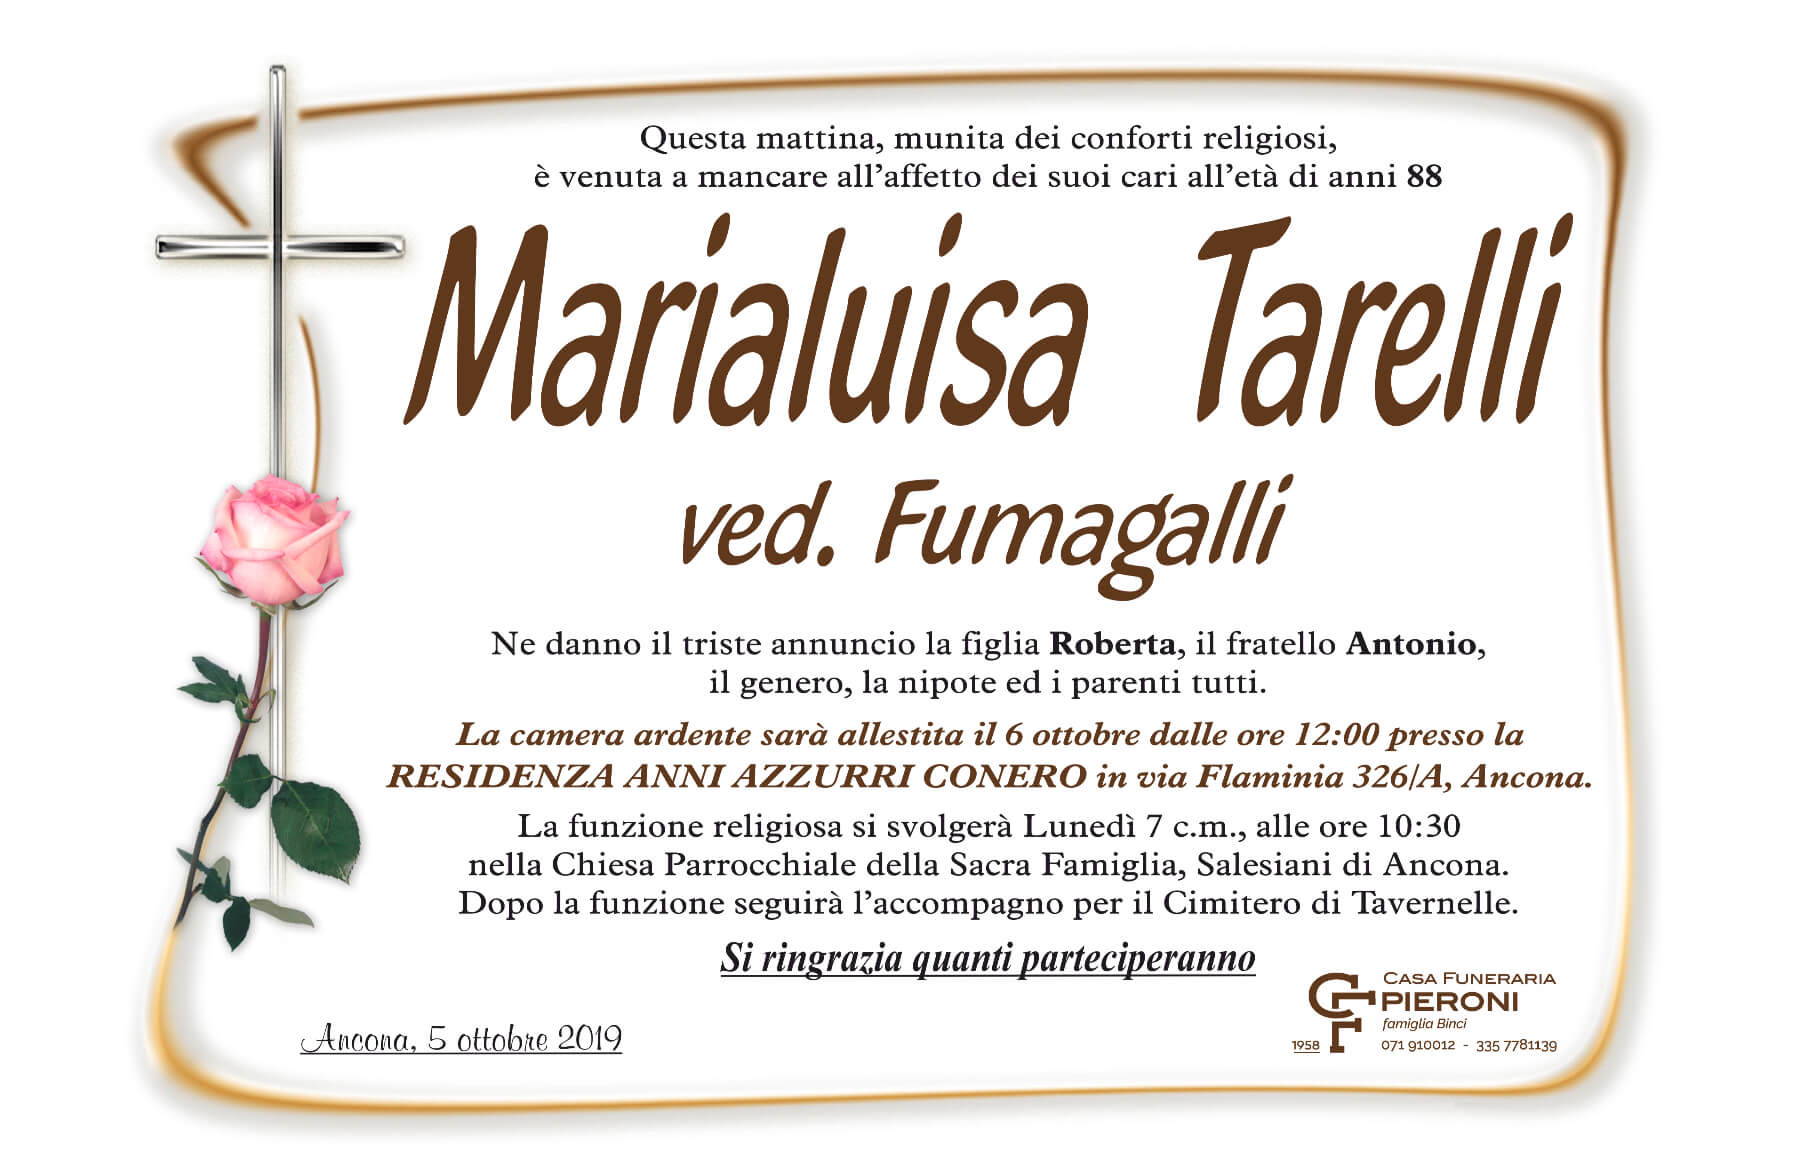 Marialuisa Tarelli